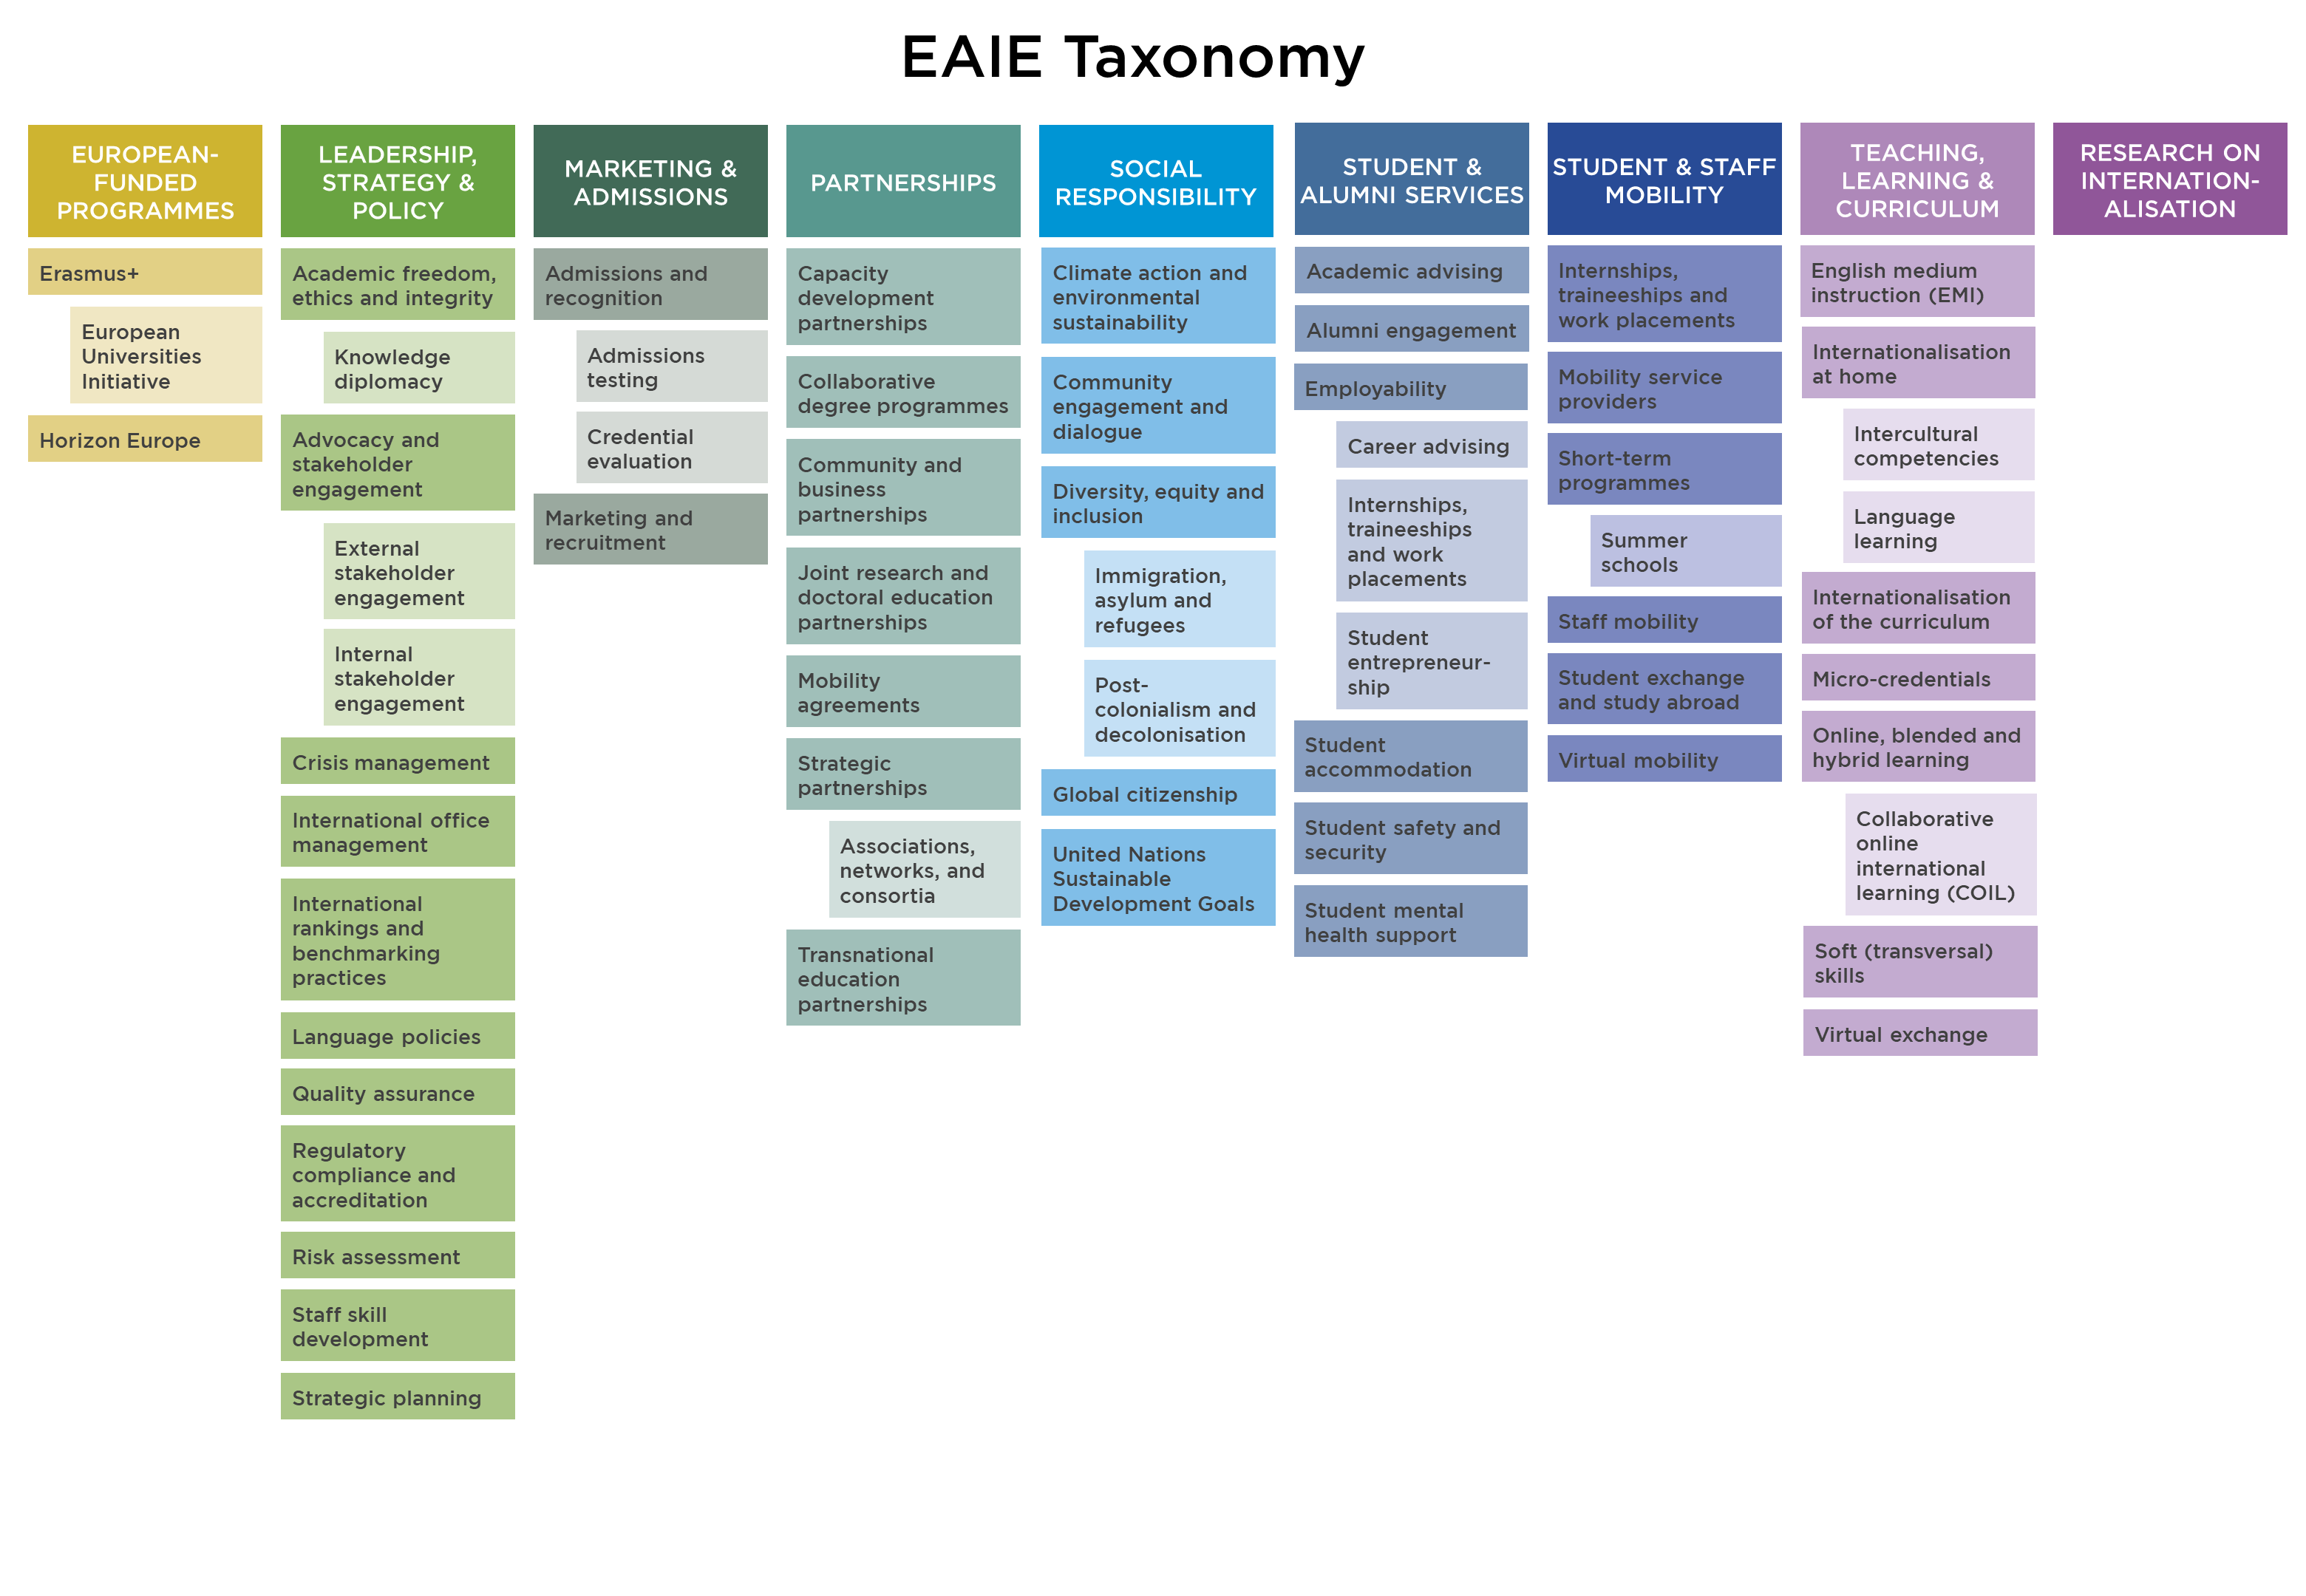 EAIE-Taxonomy-2